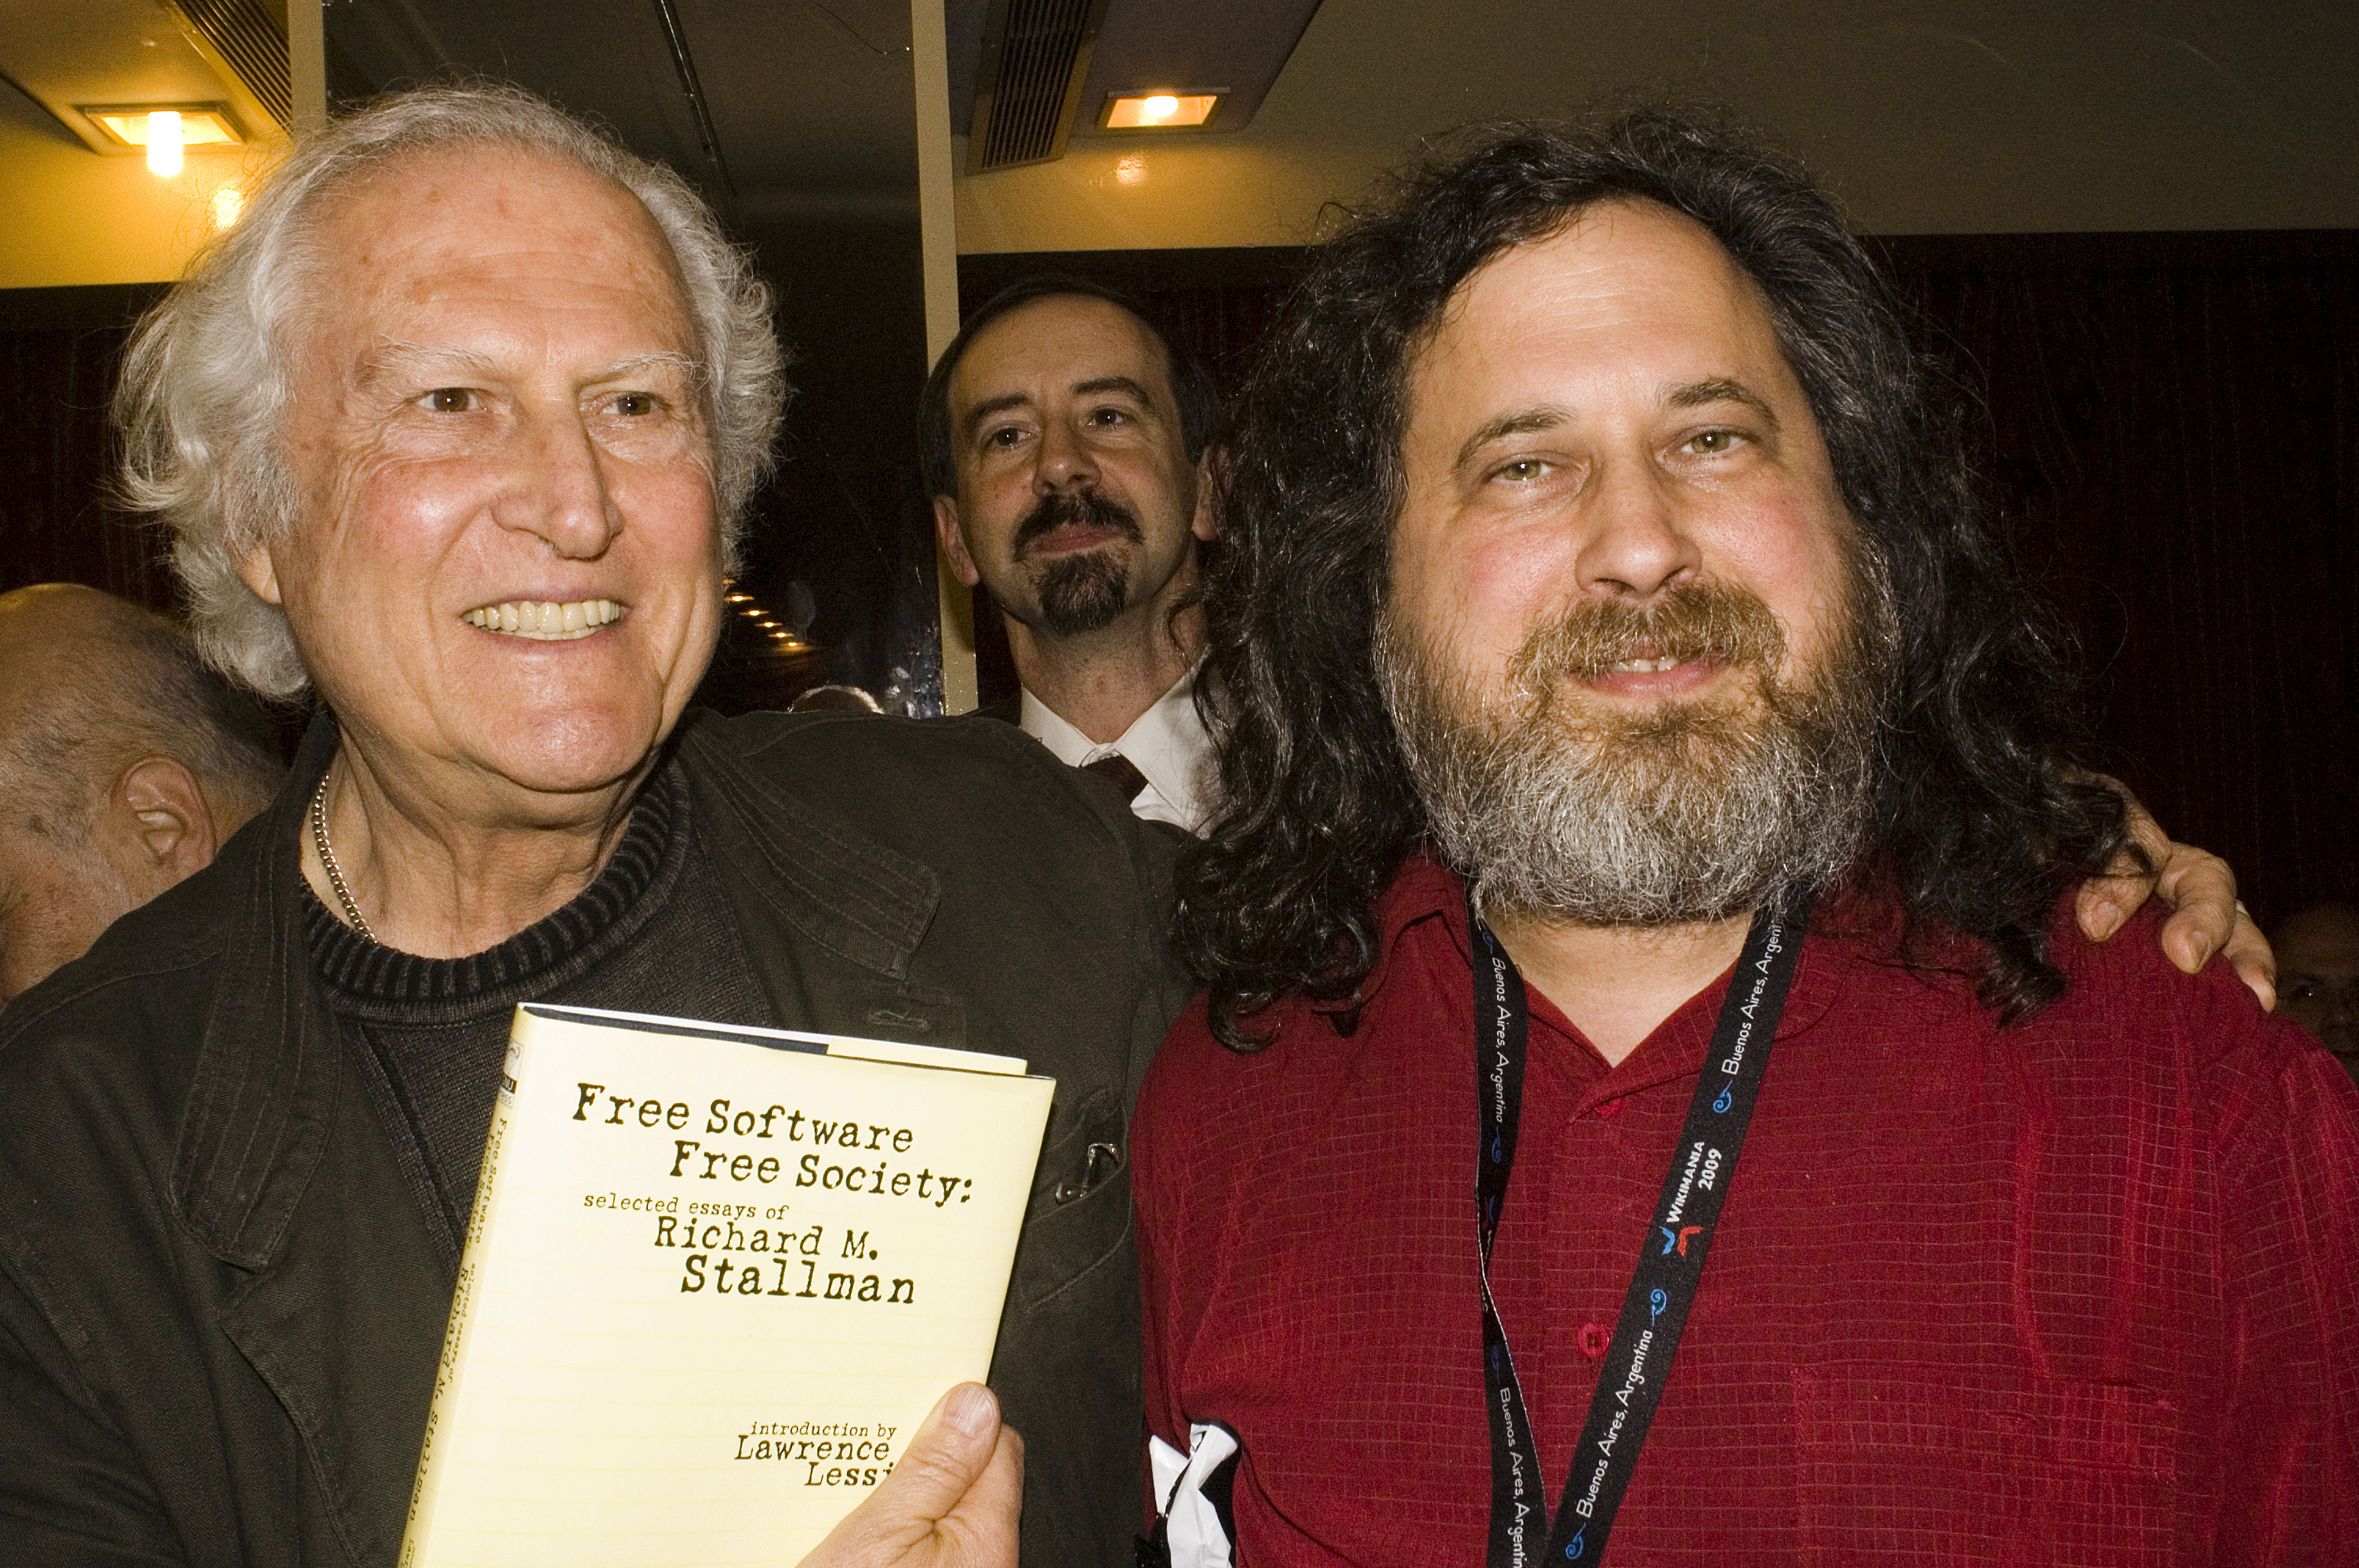 Pino Solanas en la Cena de Bienvenida de Wikimania 2009 en Buenos Aires, junto a Richard M. Stallman.